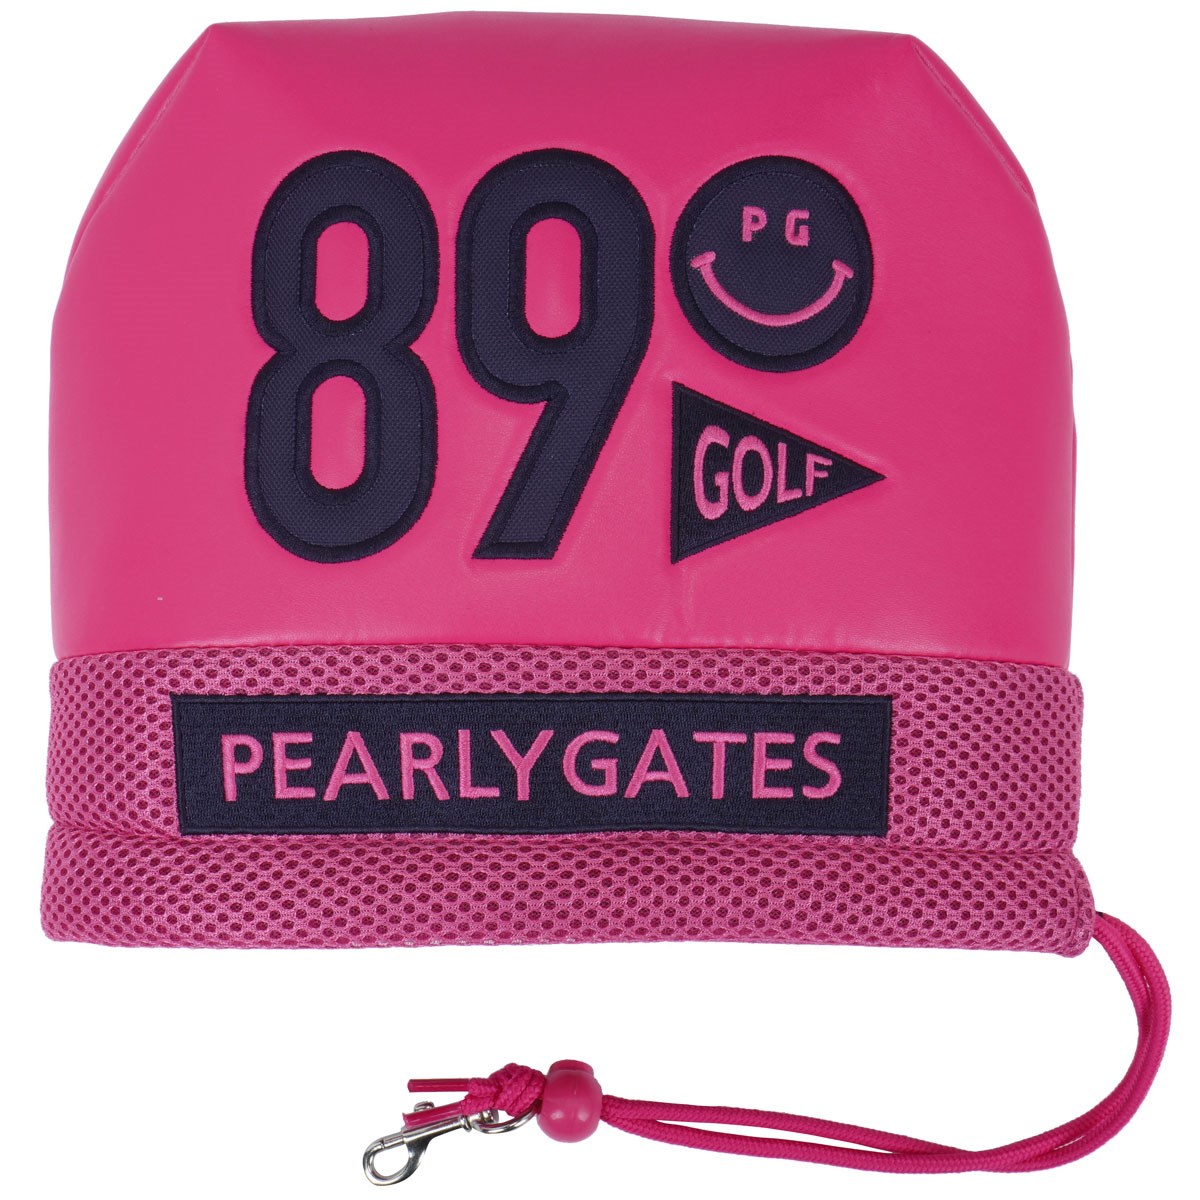 [定番モデル] パーリーゲイツ PEARLY GATES 合皮アイアンカバー ピンク 090 メンズ ゴルフ